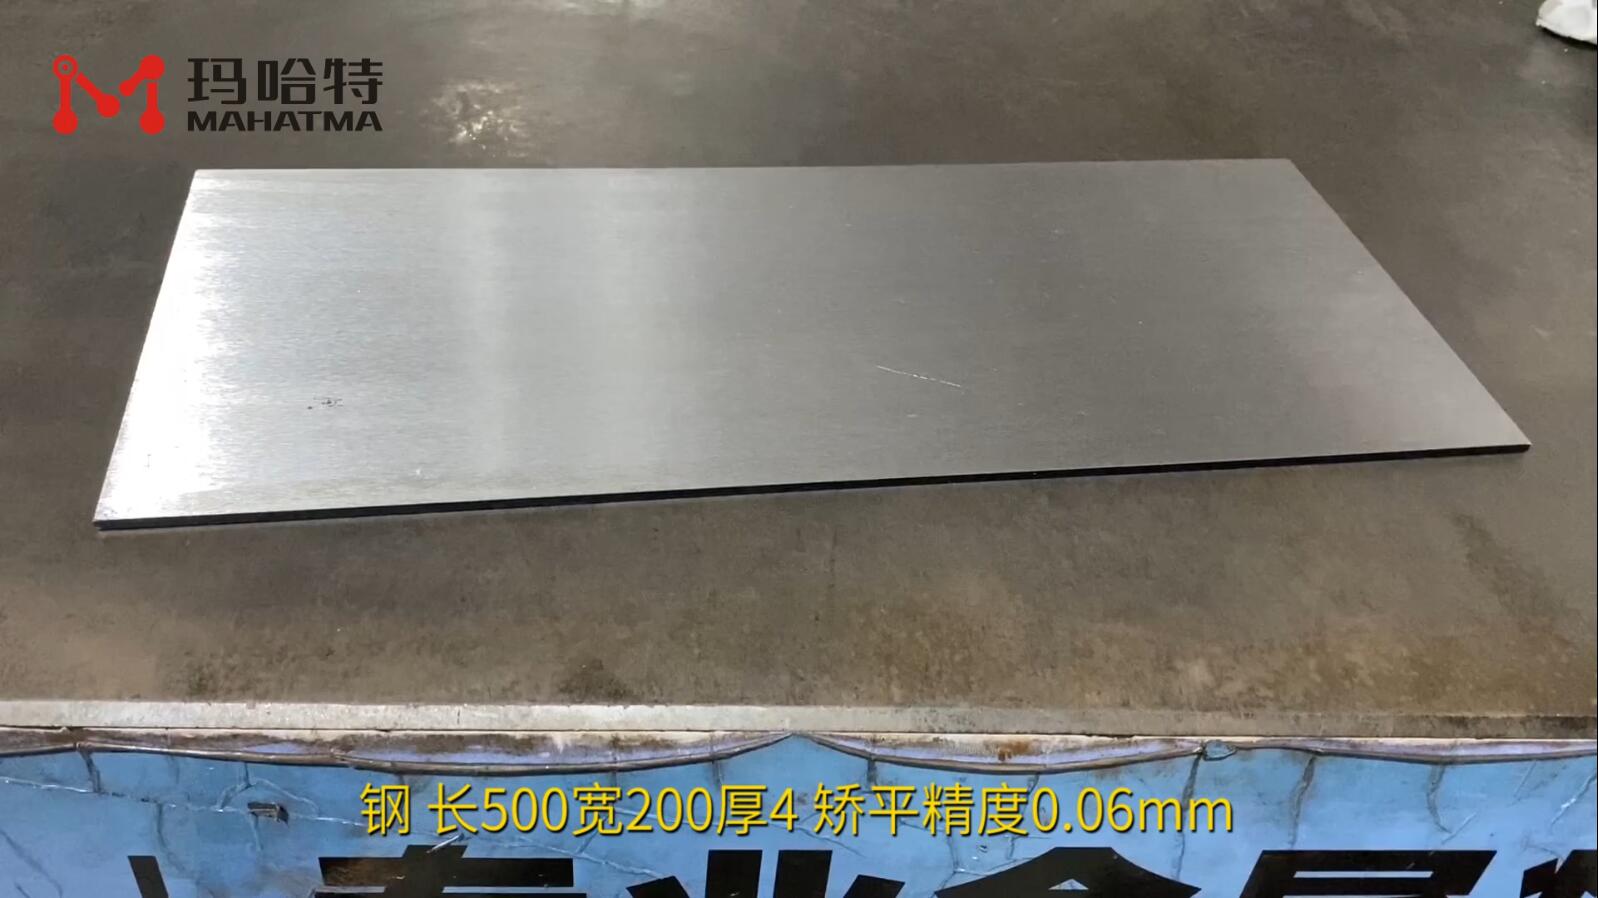 钢 MHT60-600 长500宽200厚4 矫平精度0.06mm